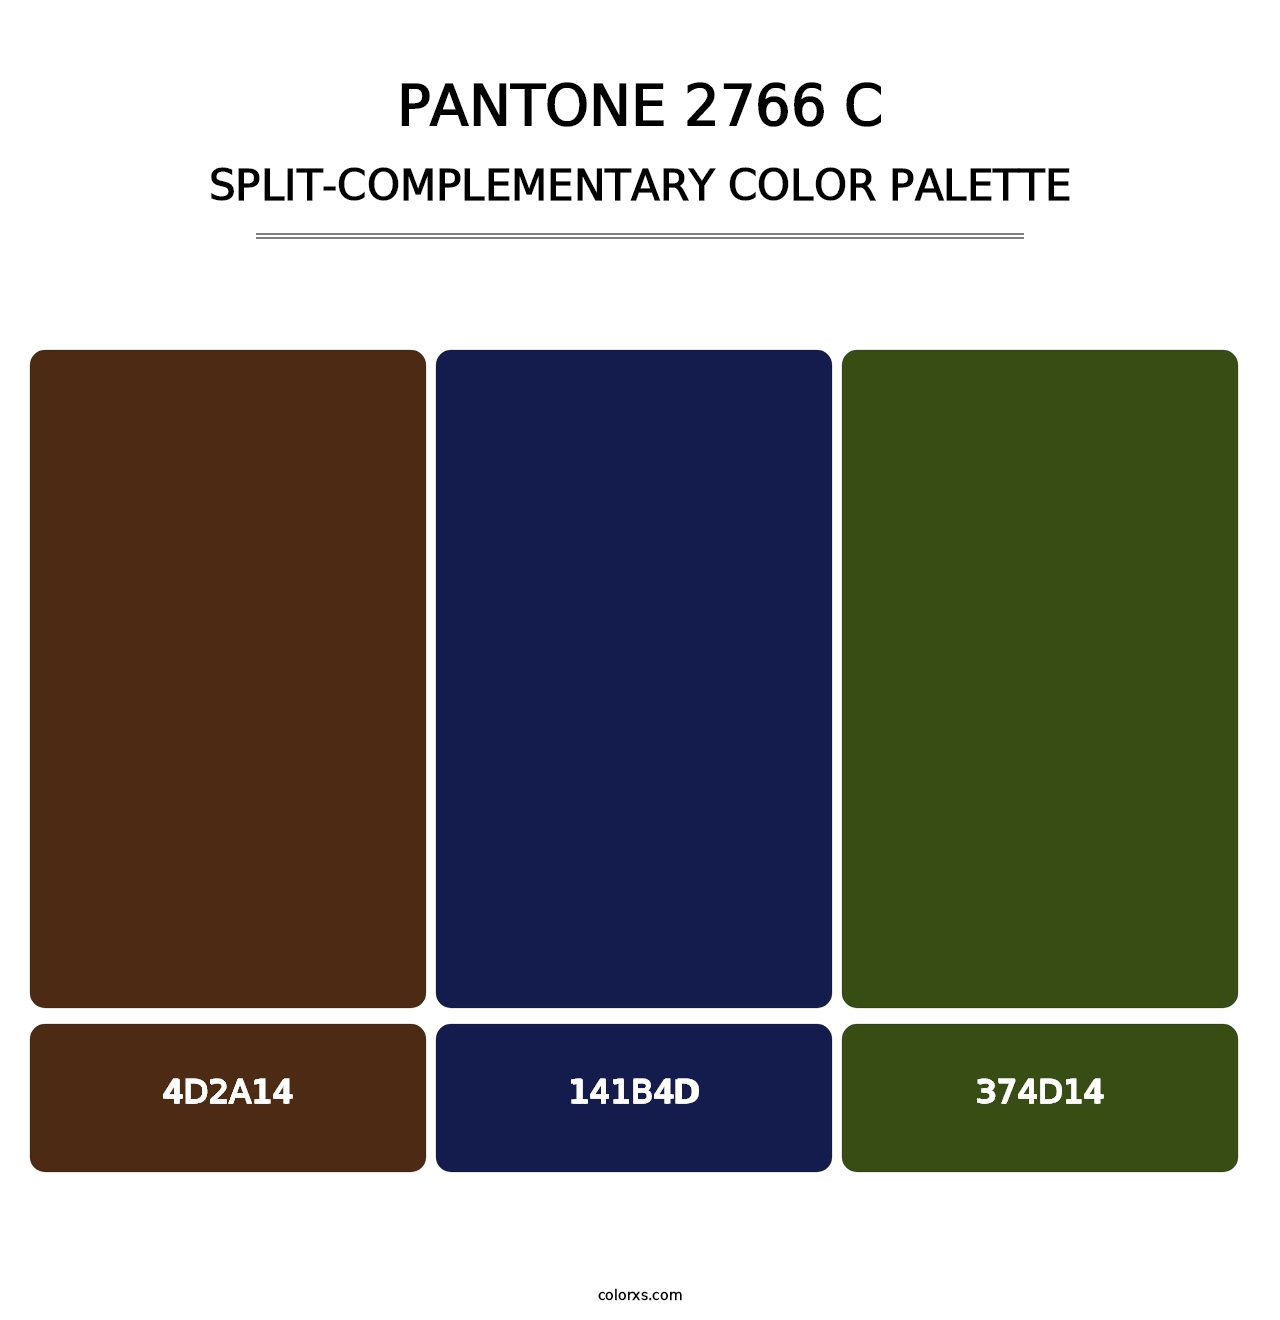 PANTONE 2766 C - Split-Complementary Color Palette